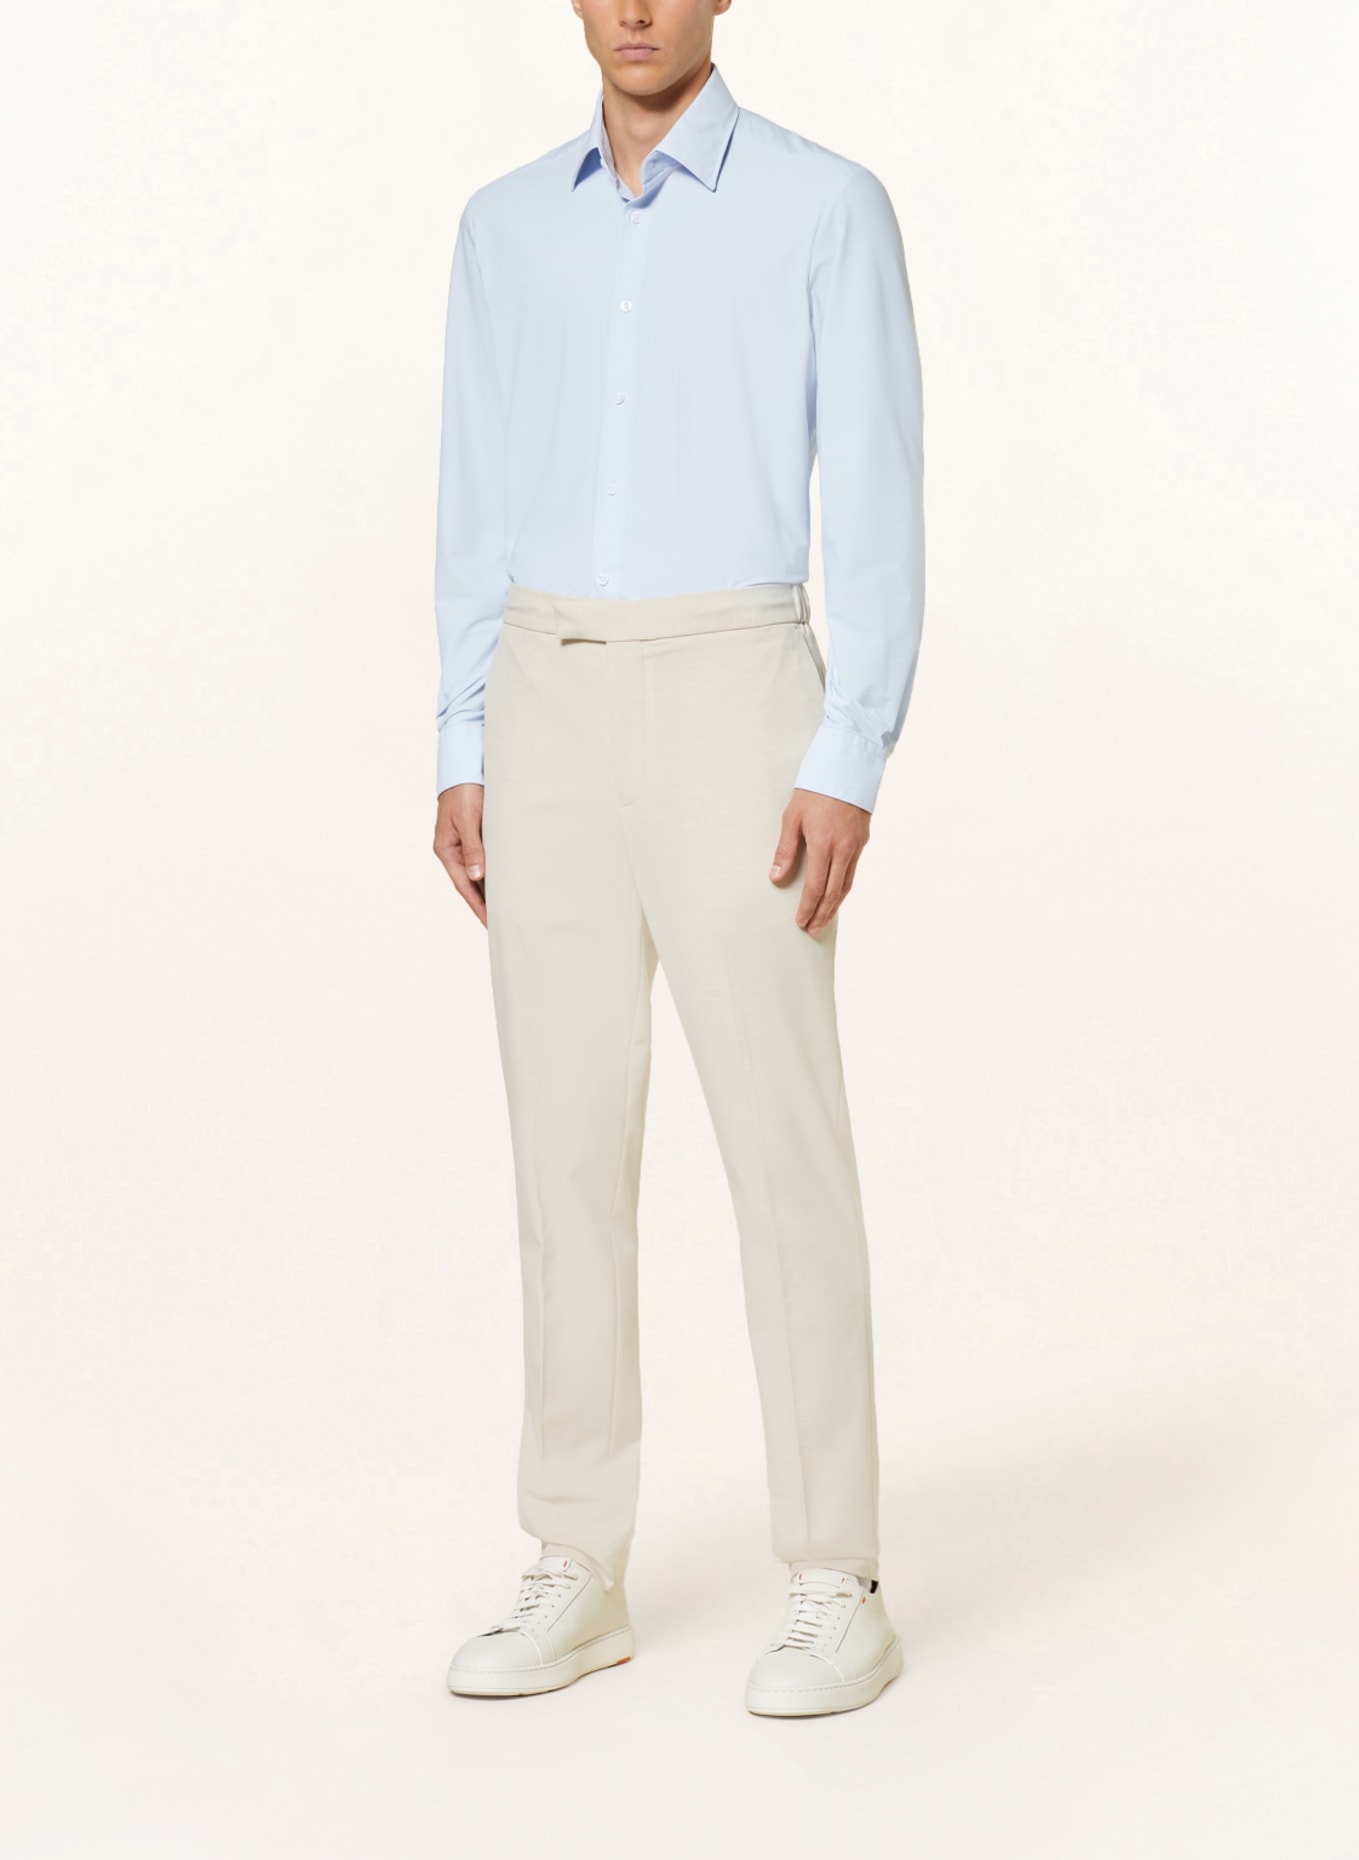 REISS Jersey shirt VOYAGER regular fit, Color: LIGHT BLUE (Image 2)